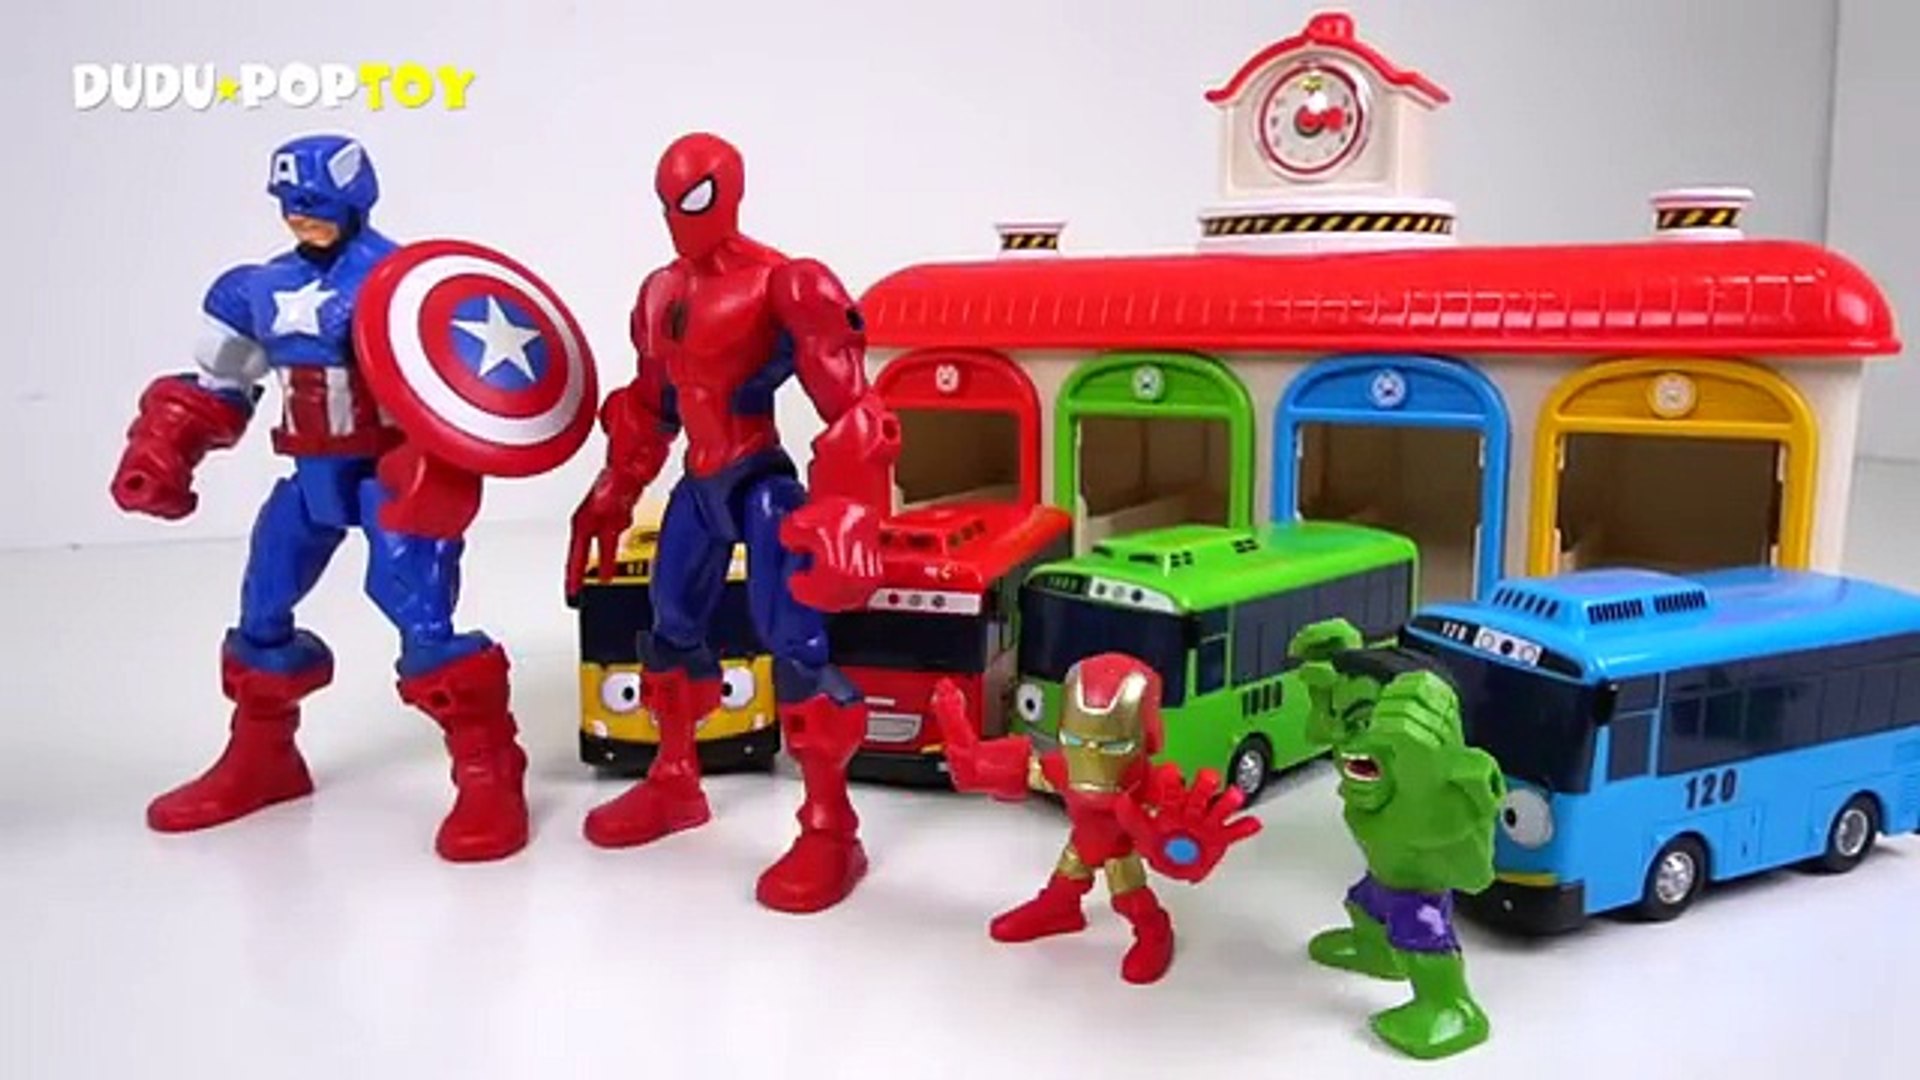 dudu pop toy avengers infinity war